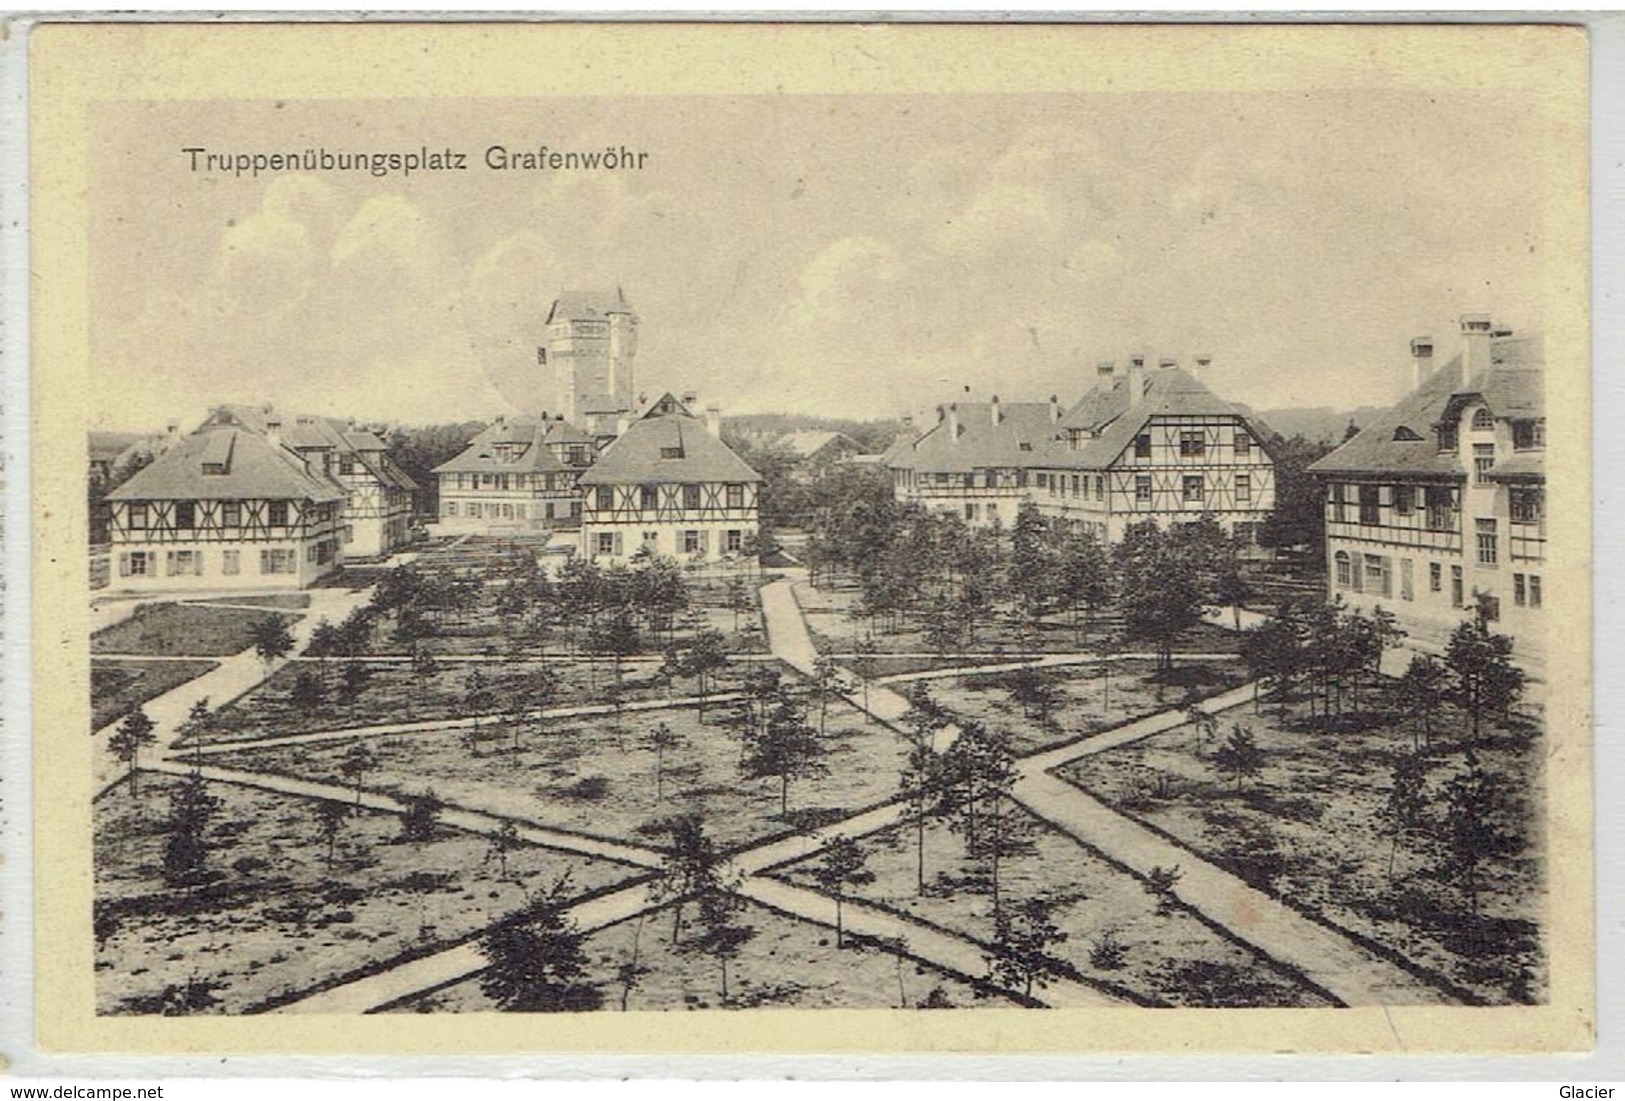 GRAFENWÖHR - Bayern - Truppenûbungsplatz - Stempel Lager Grafenwöhr 28 Okt 1915 - Grafenwoehr